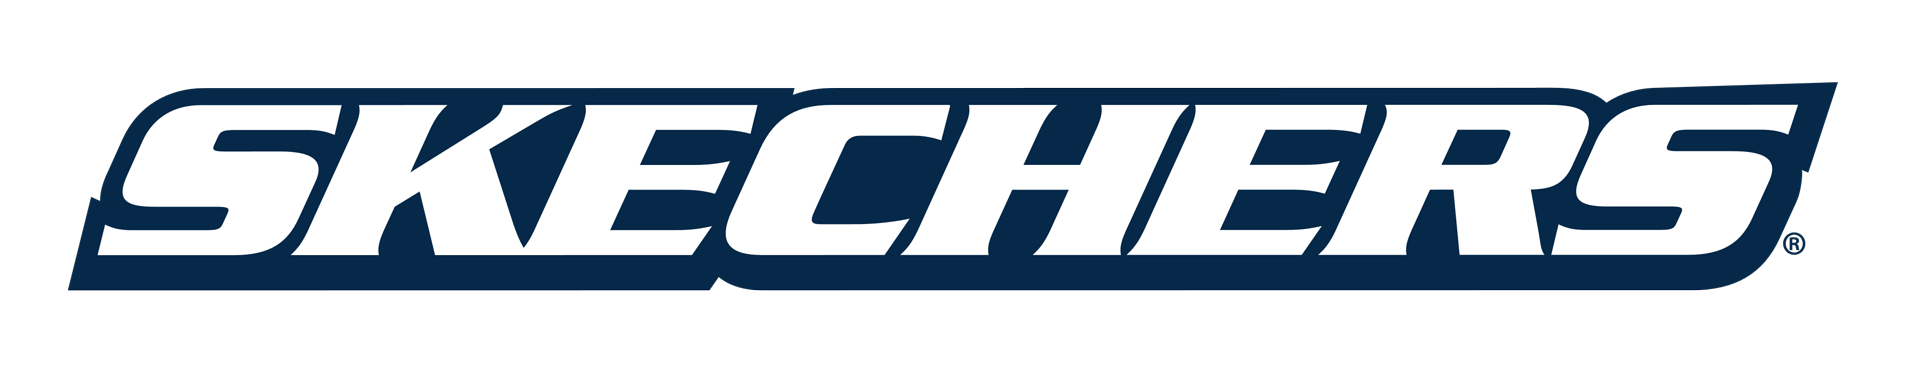 Skechers logo.